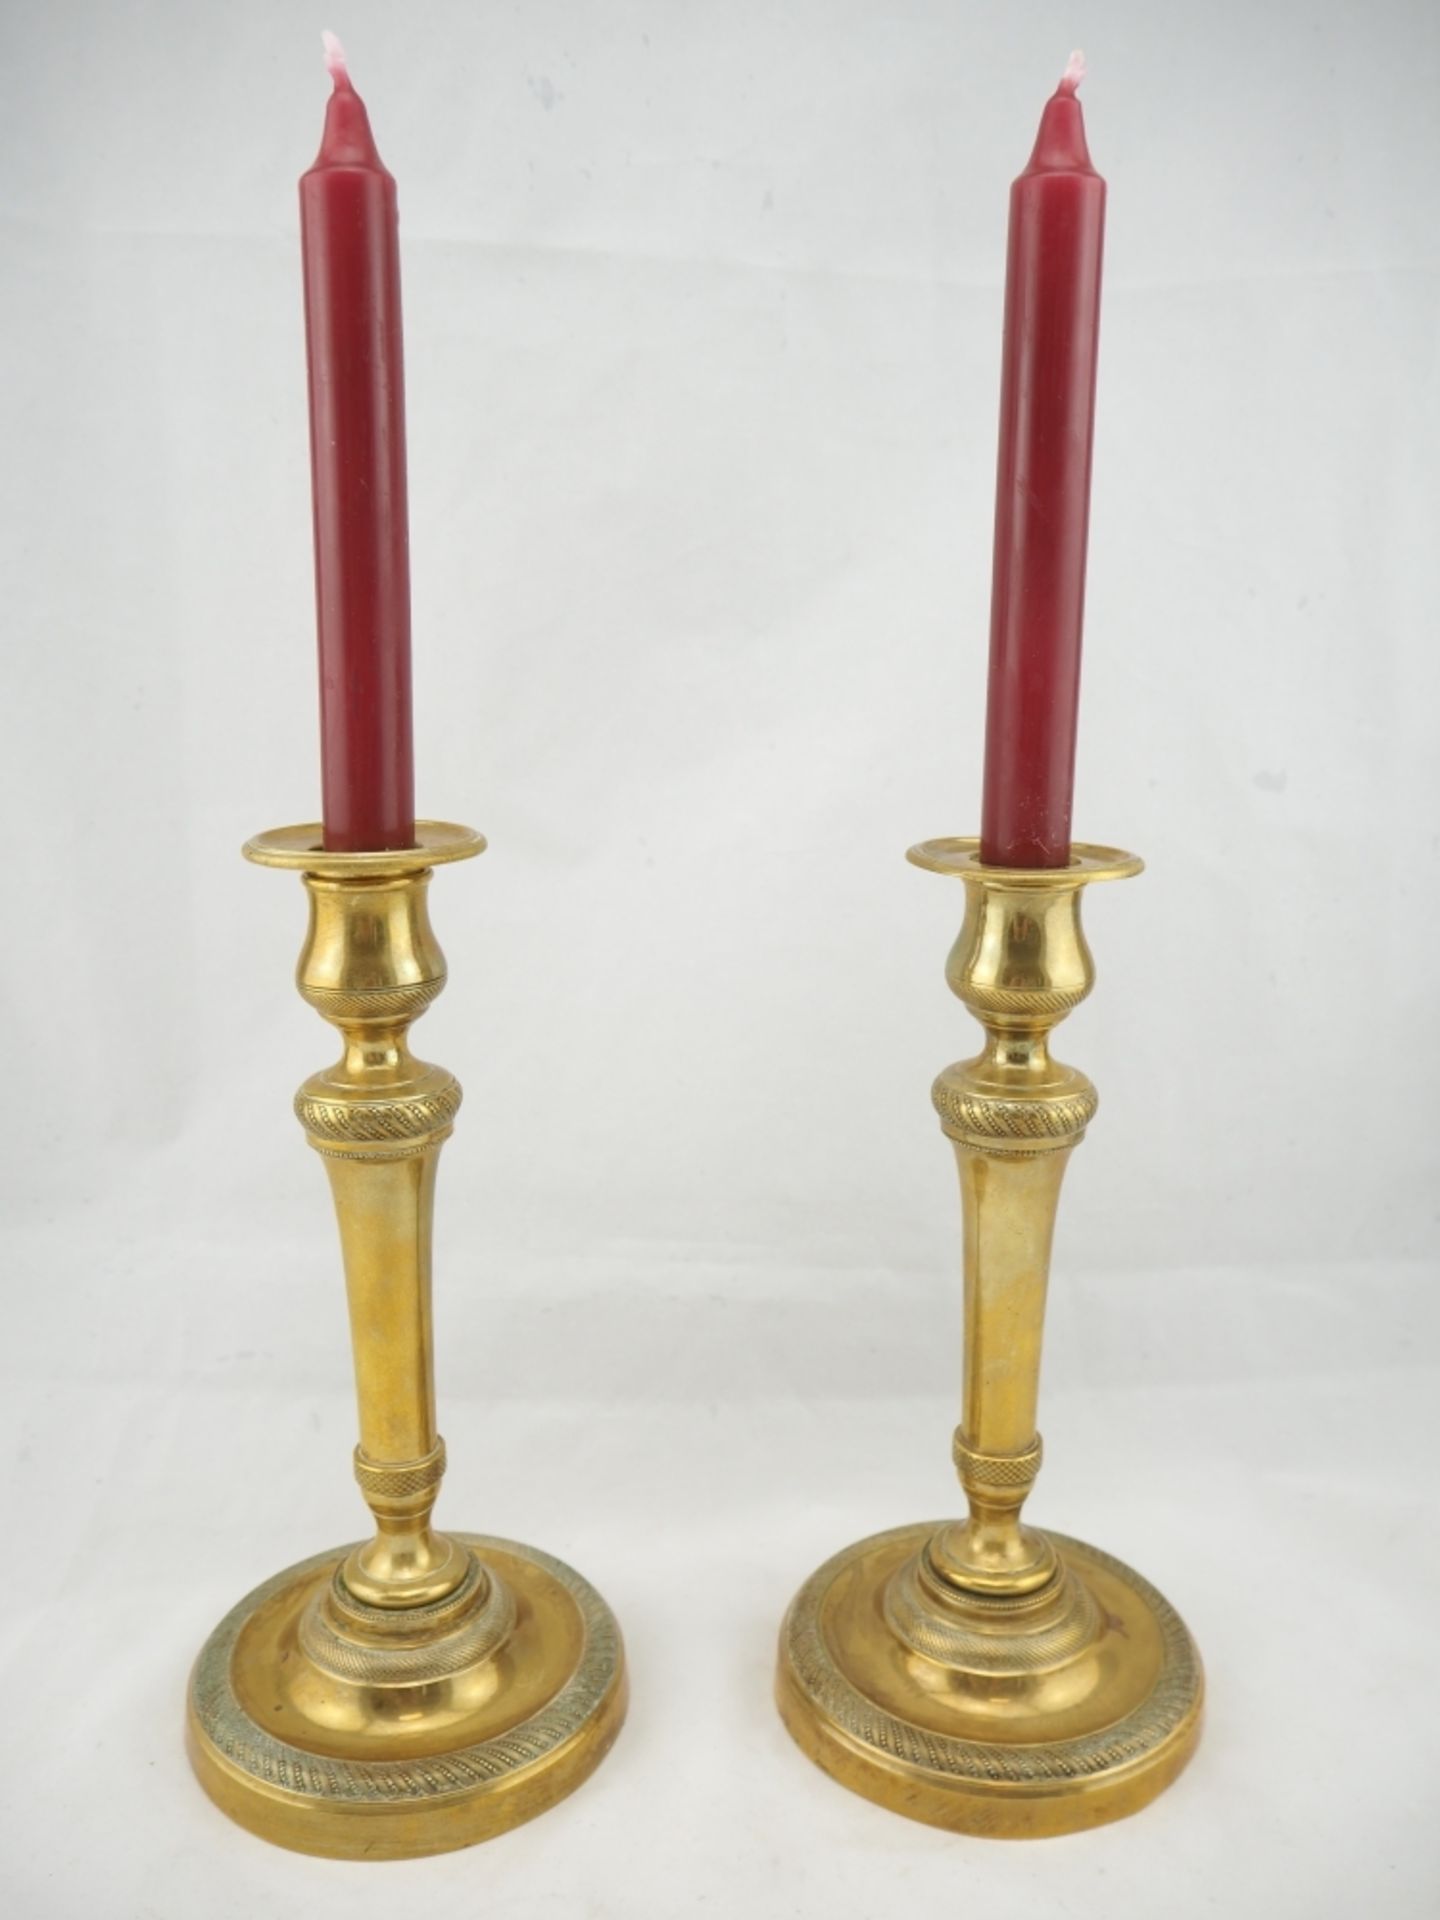 Paar Leuchter, um 1800klassizistisches Paar Leuchter aus Messing oder Bronze, vergoldet.